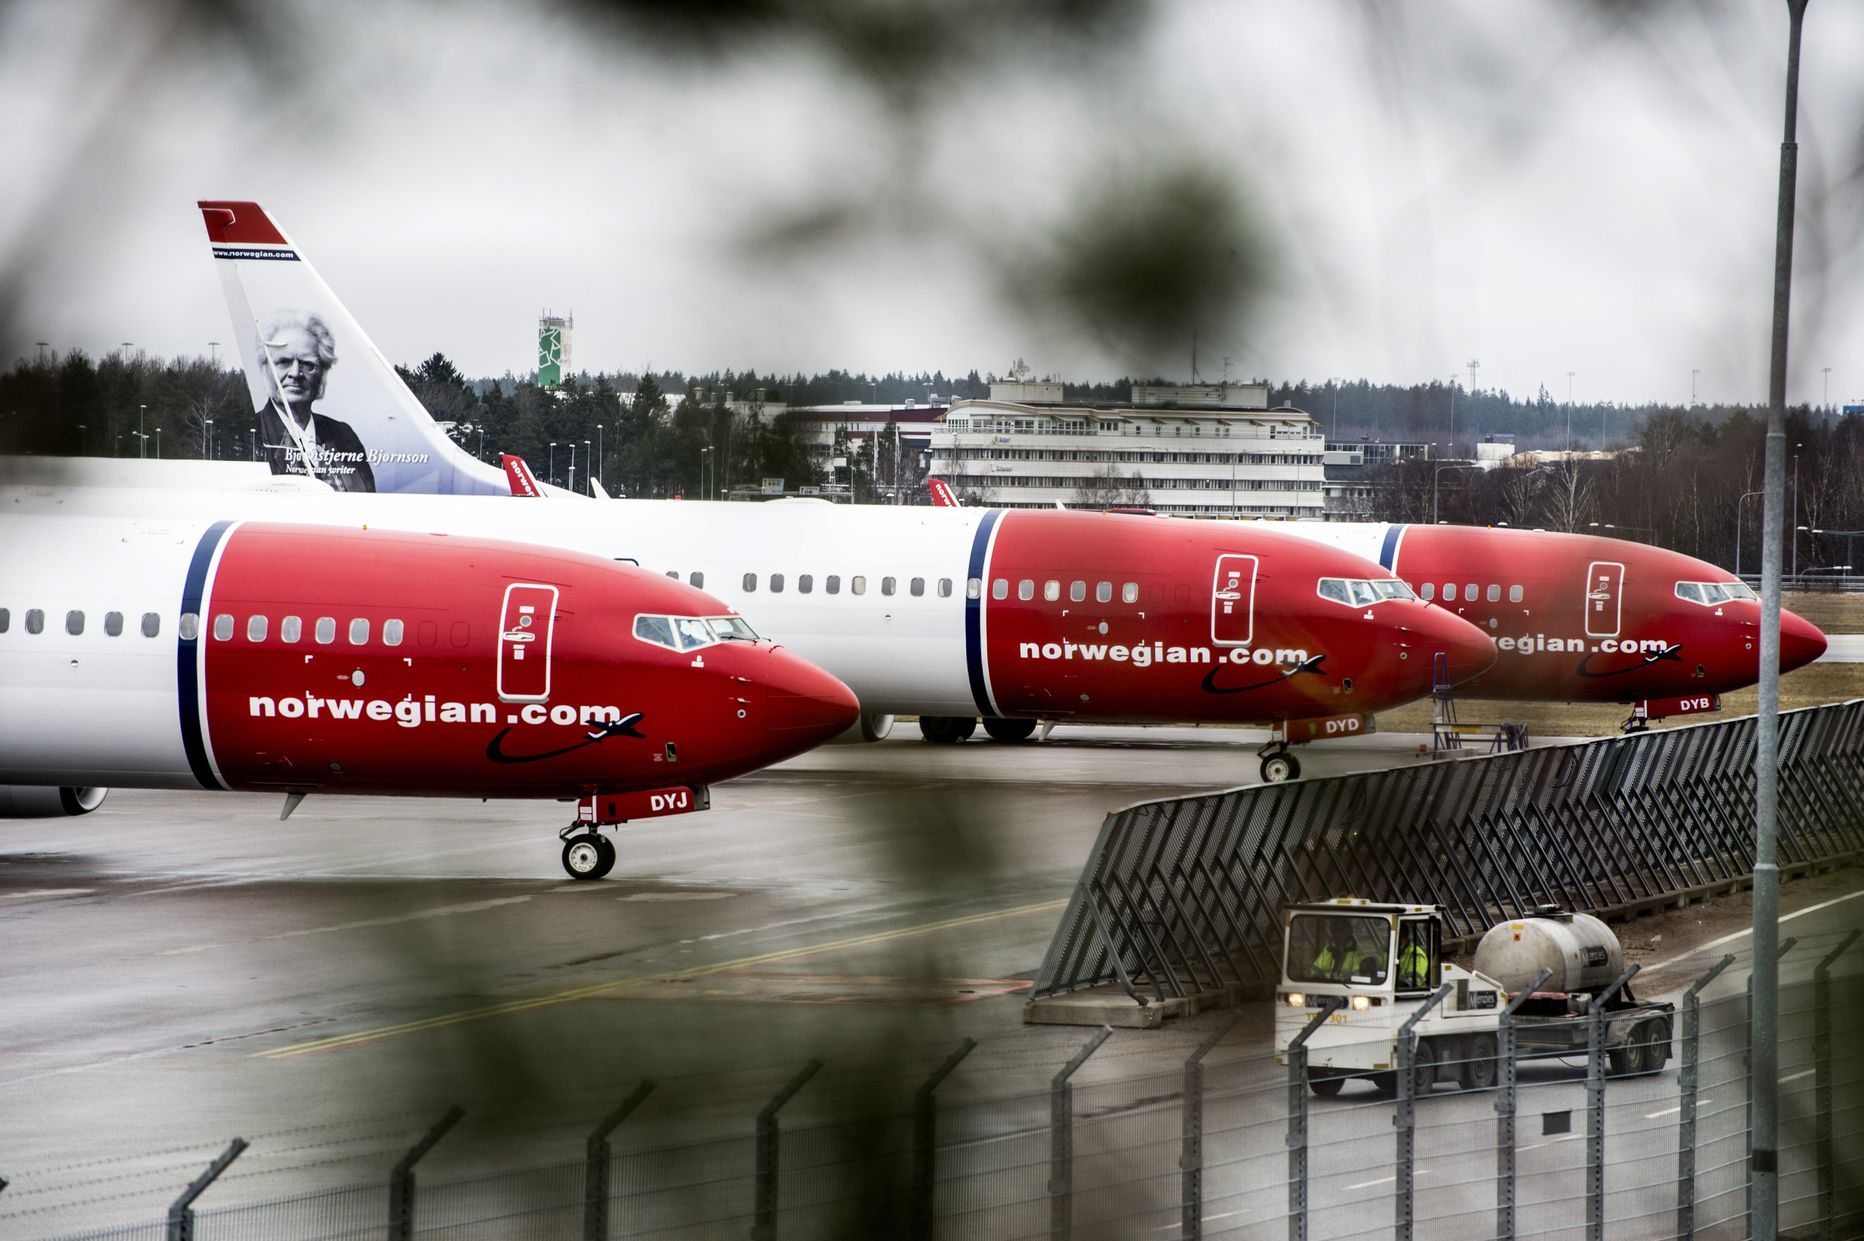 Norra odavlennufirmal on põhjust rõõmustada.